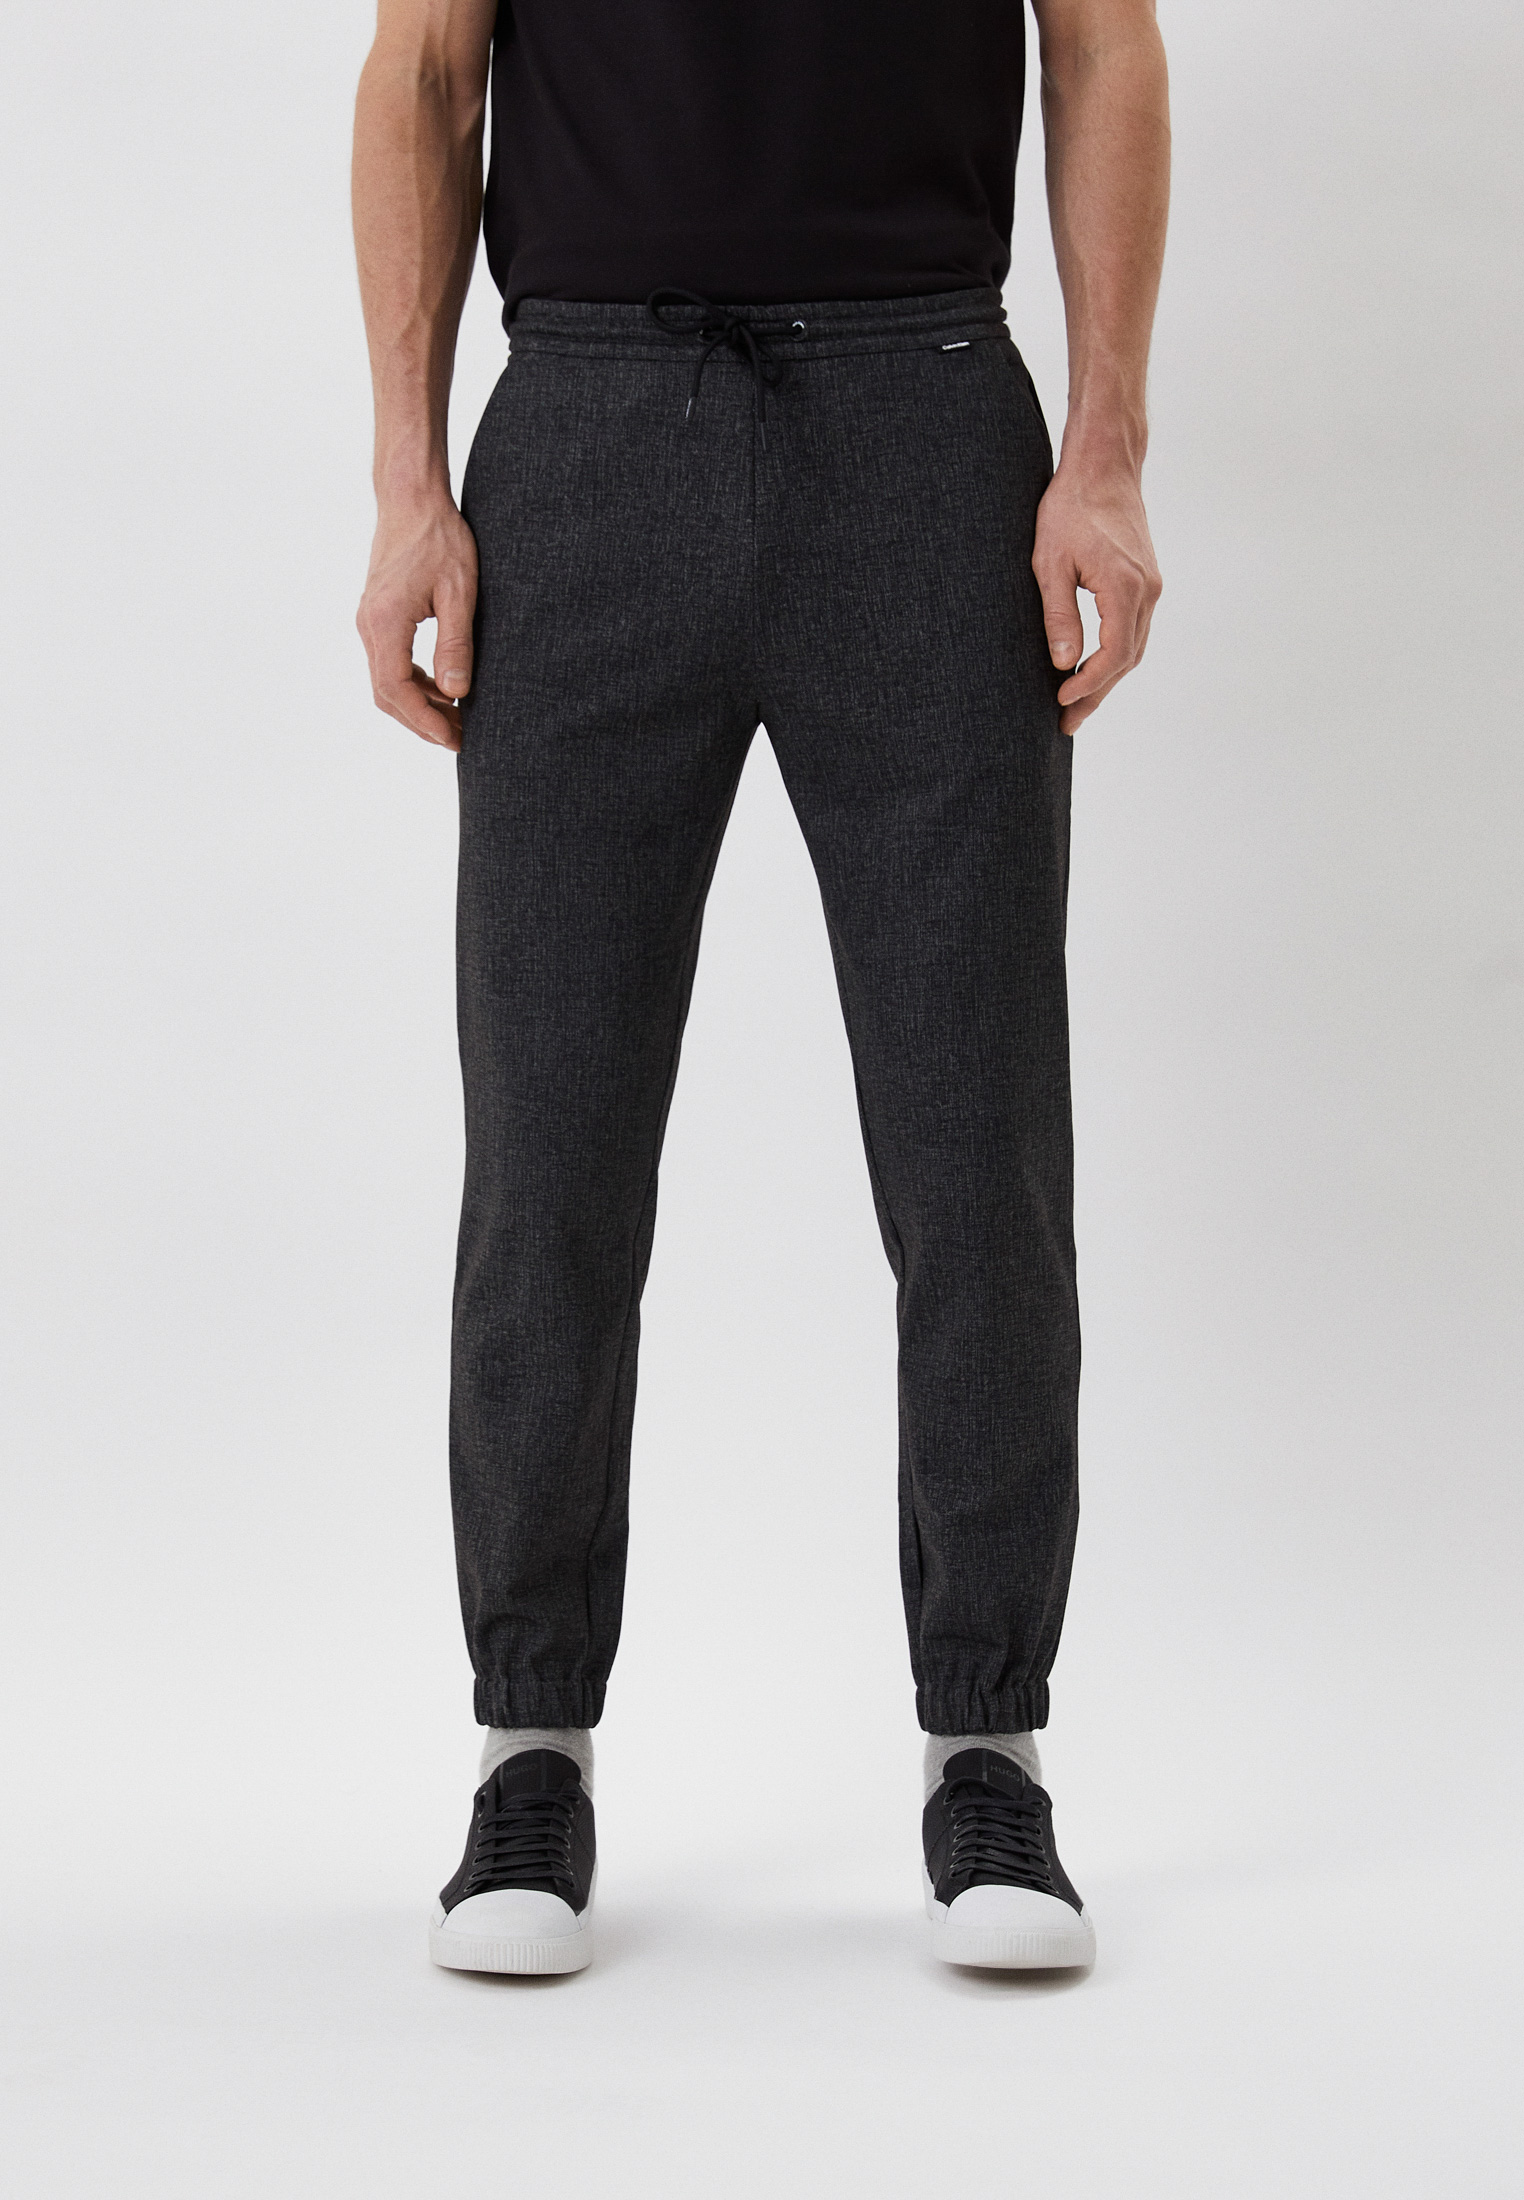 Мужские повседневные брюки Calvin Klein (Кельвин Кляйн) K10K108149 (Цвет:Серый) купить в интернет-магазине stylefish.ru